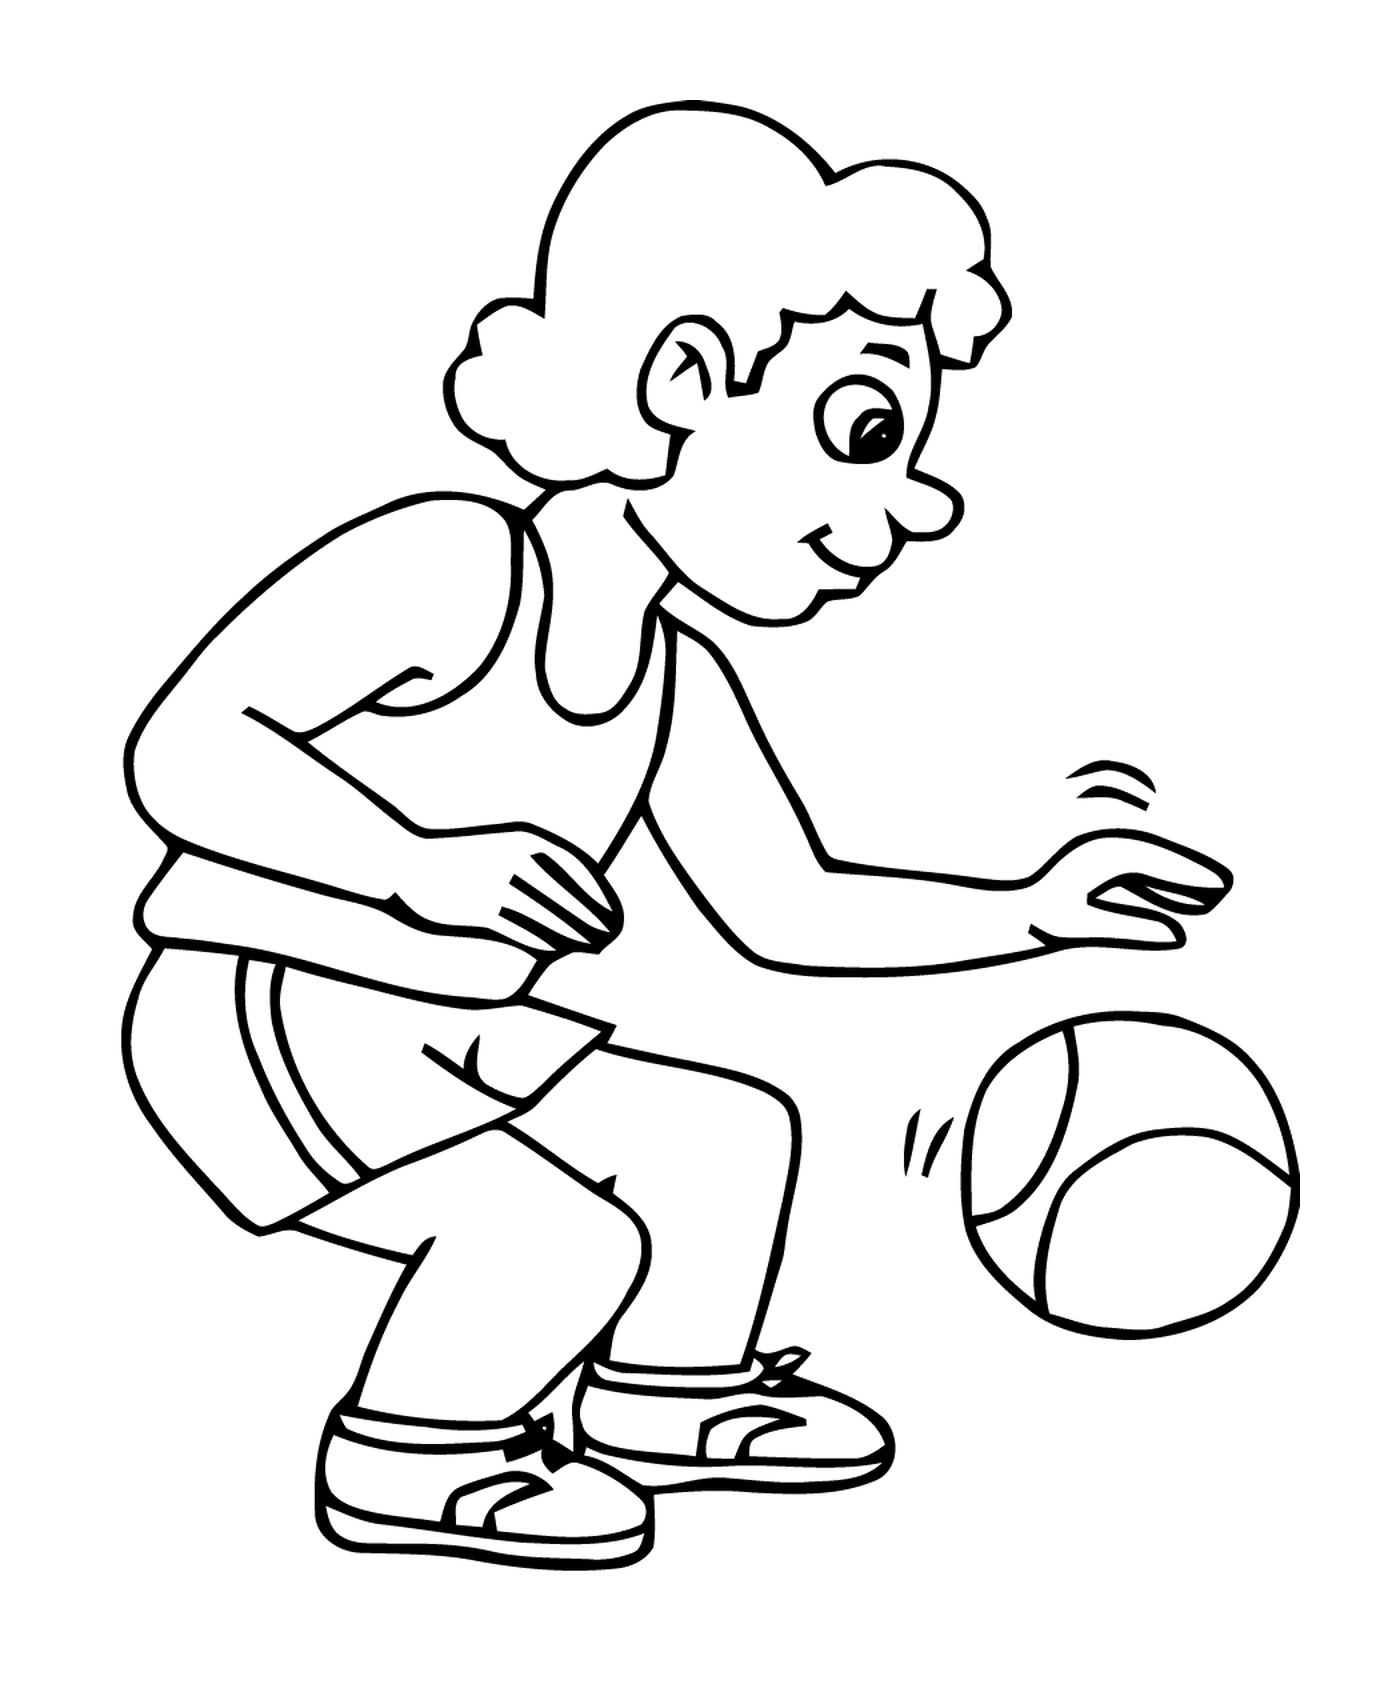  Esporte, basquete, homem jogando com uma bola no chão 